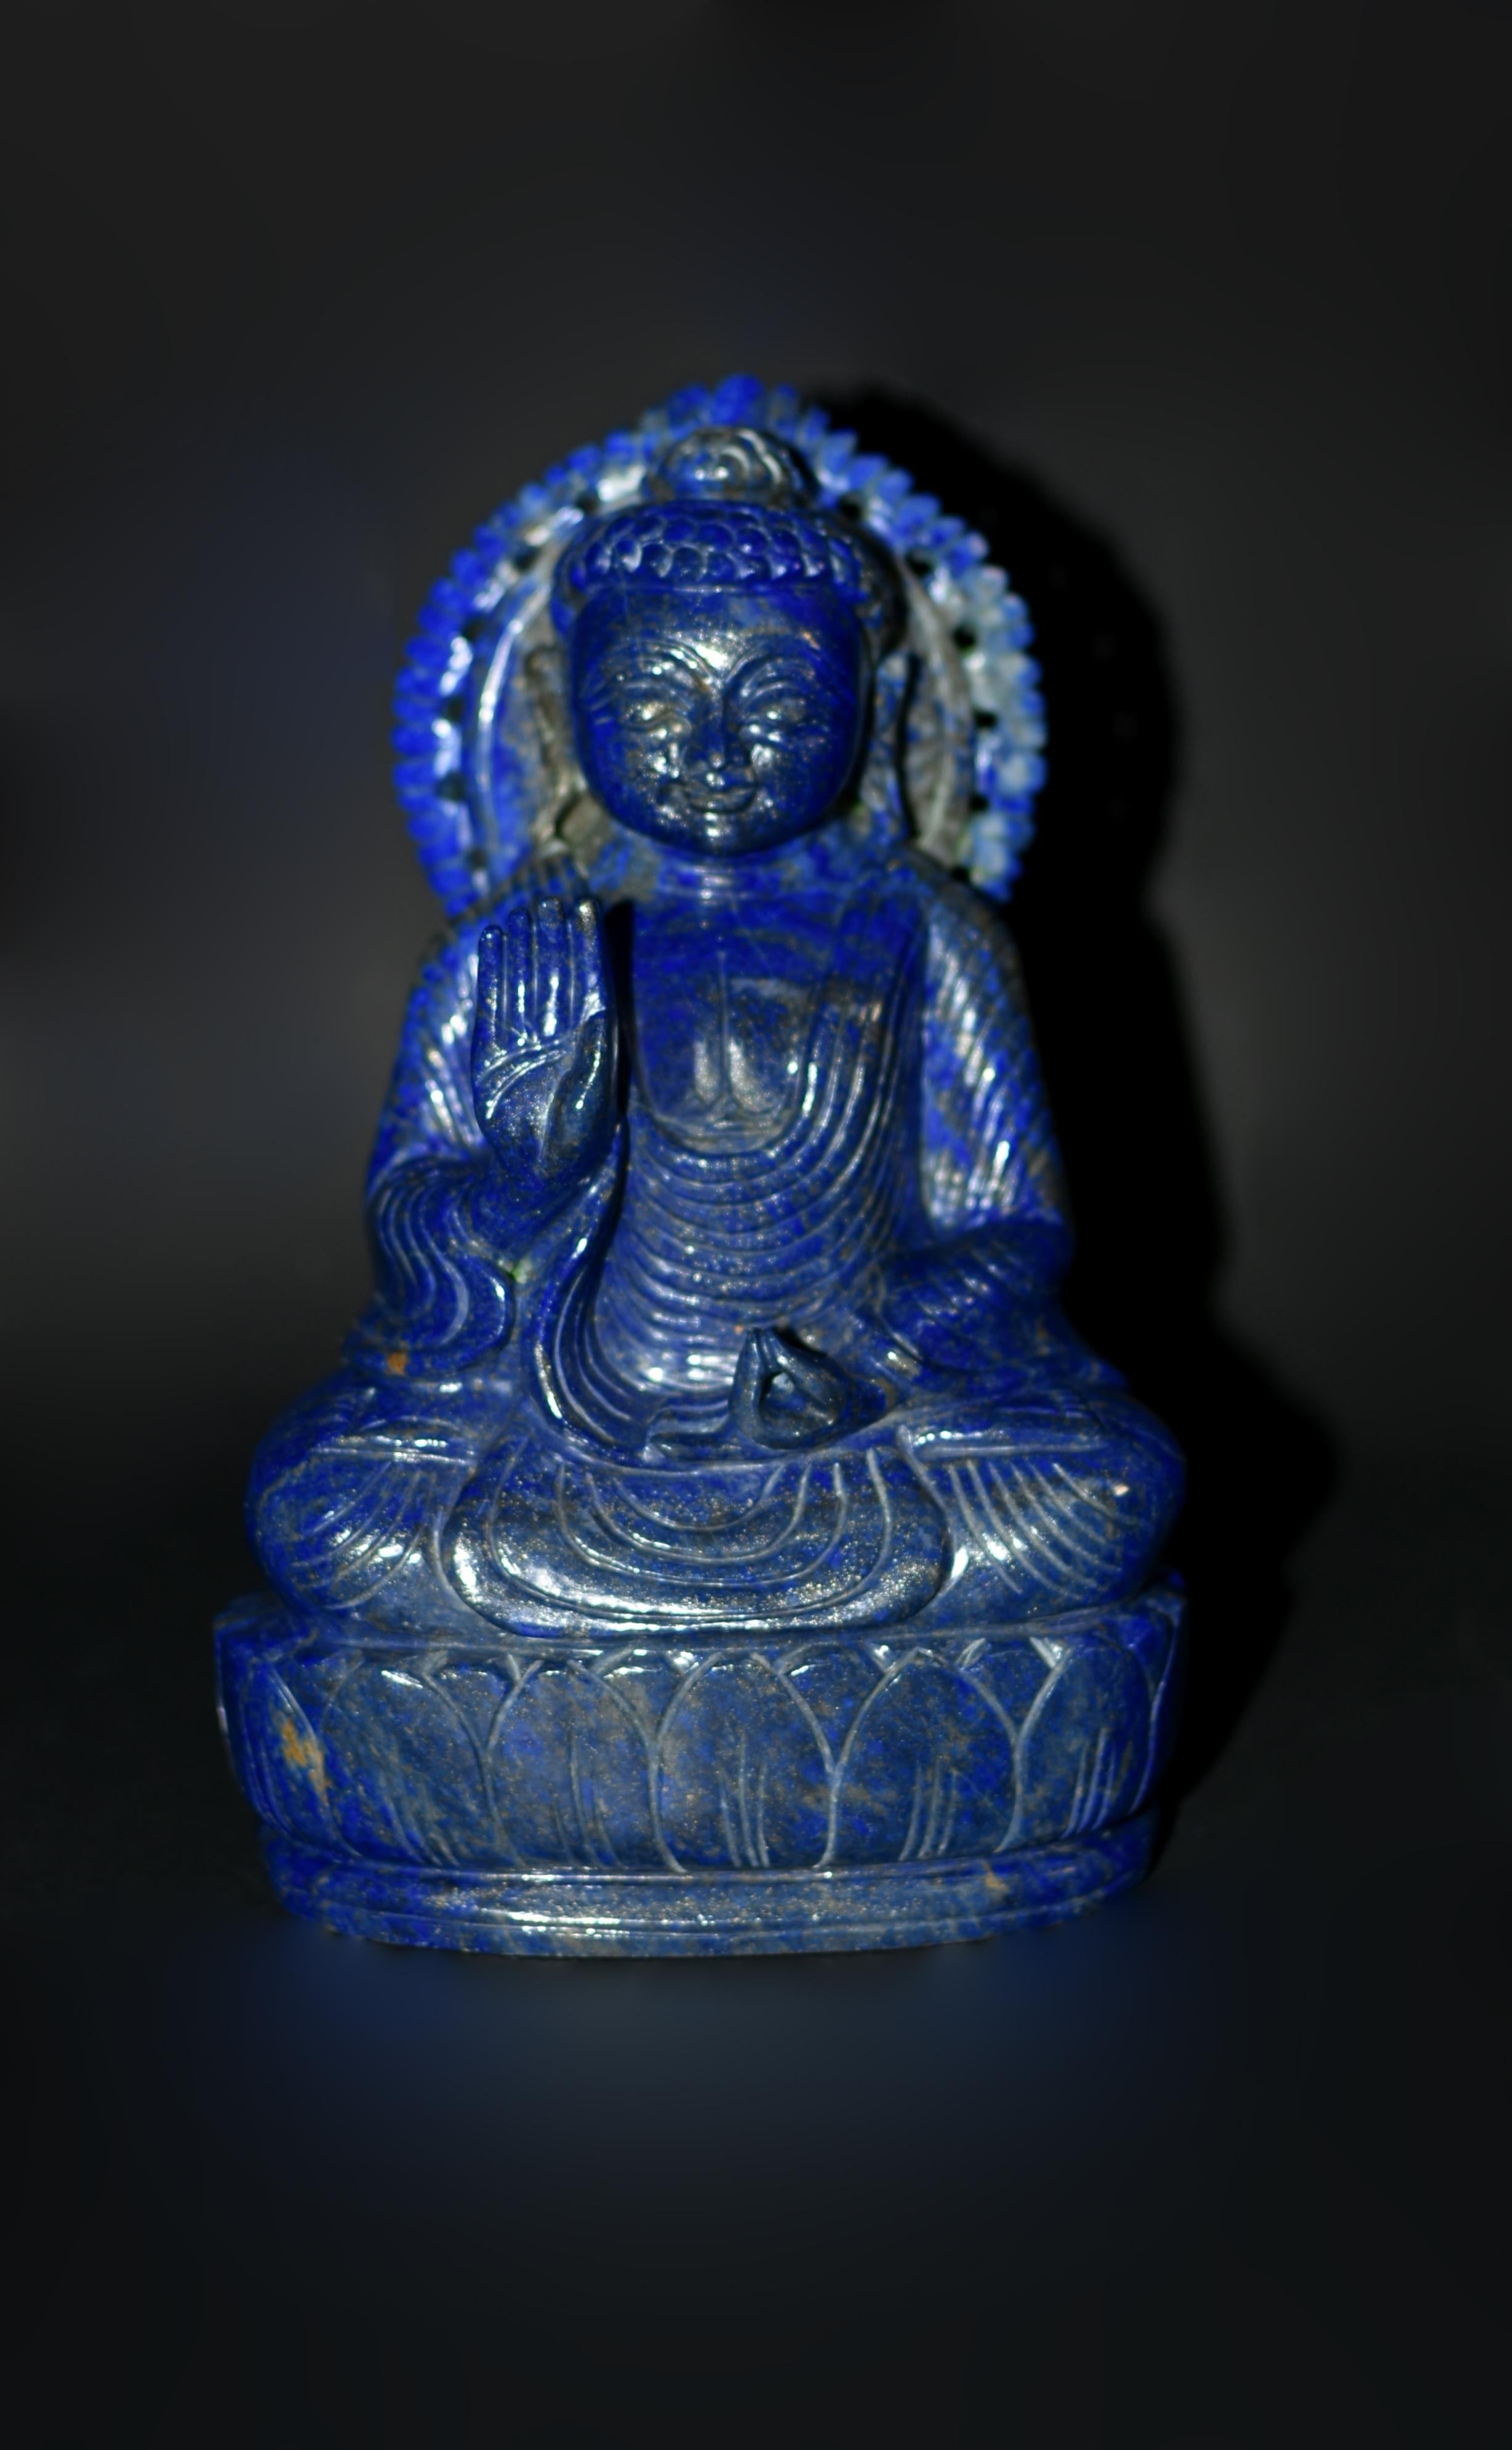 Fein geschnitzt aus dem hochwertigsten natürlichen Lapislazuli aus Afghanistan, strahlt diese 6 Pfund schwere Edelsteinstatue eine Aura des Friedens und der Ruhe aus und stellt Shakyamuni, den historischen Buddha, dar. Sein rundes Gesicht mit den